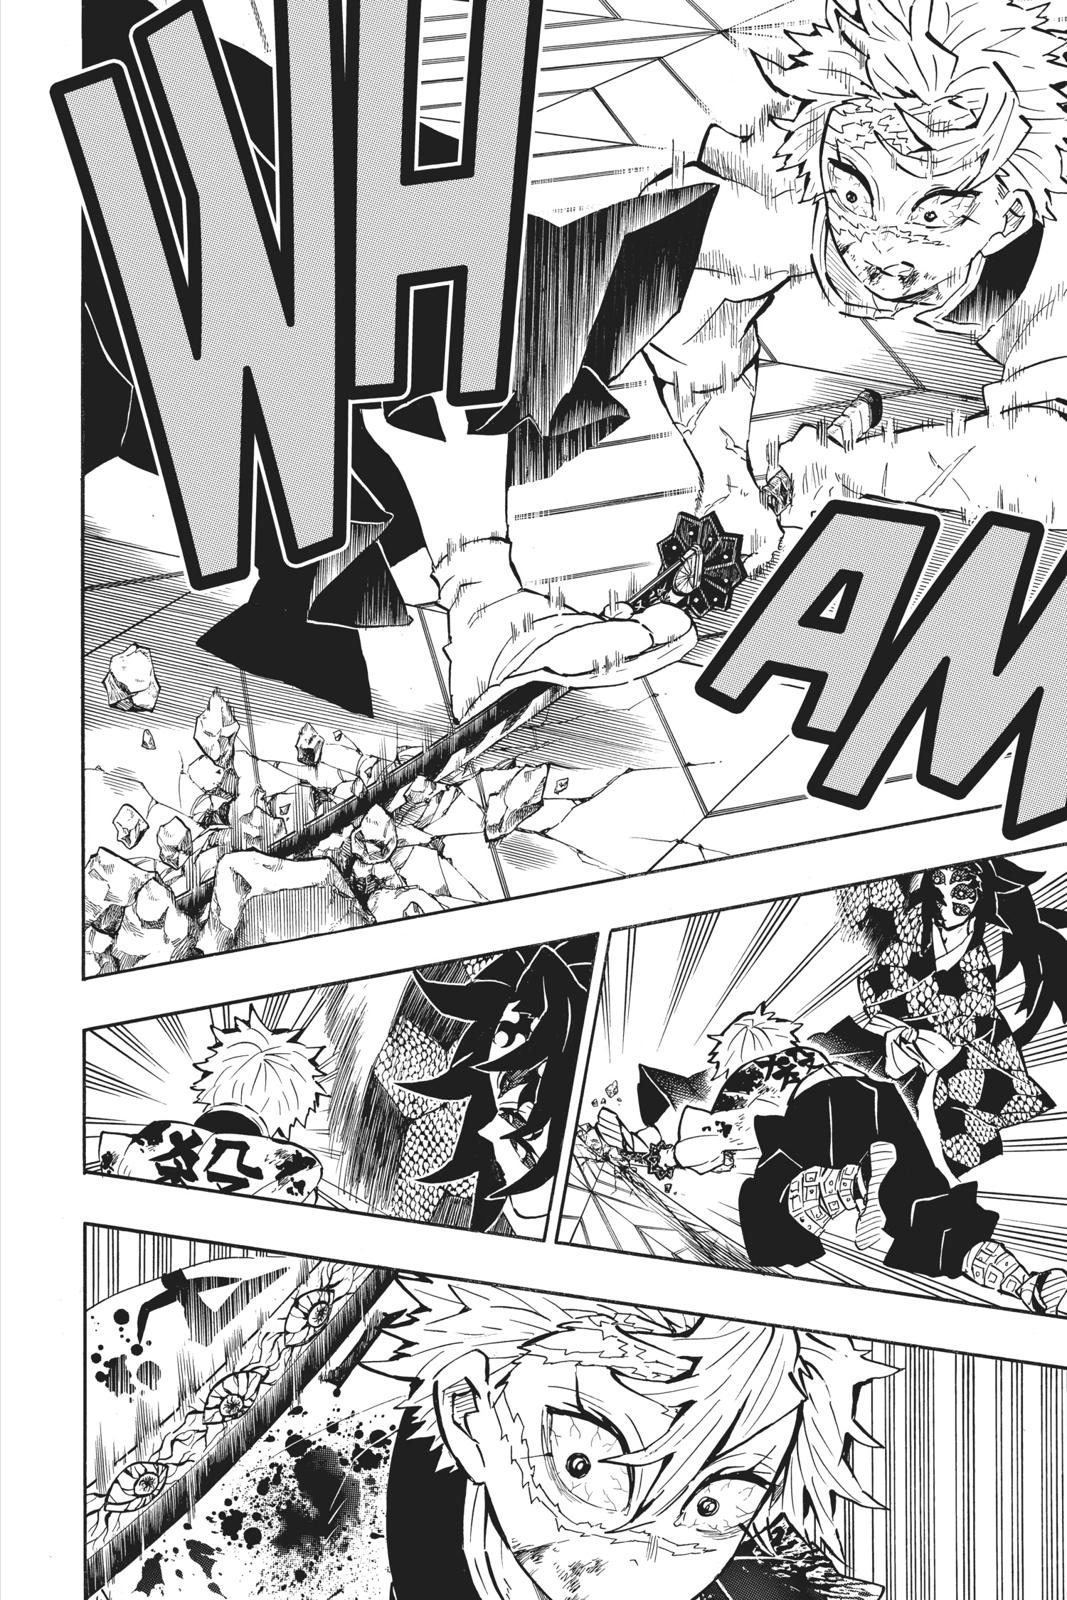 Demon Slayer Manga Manga Chapter - 168 - image 8